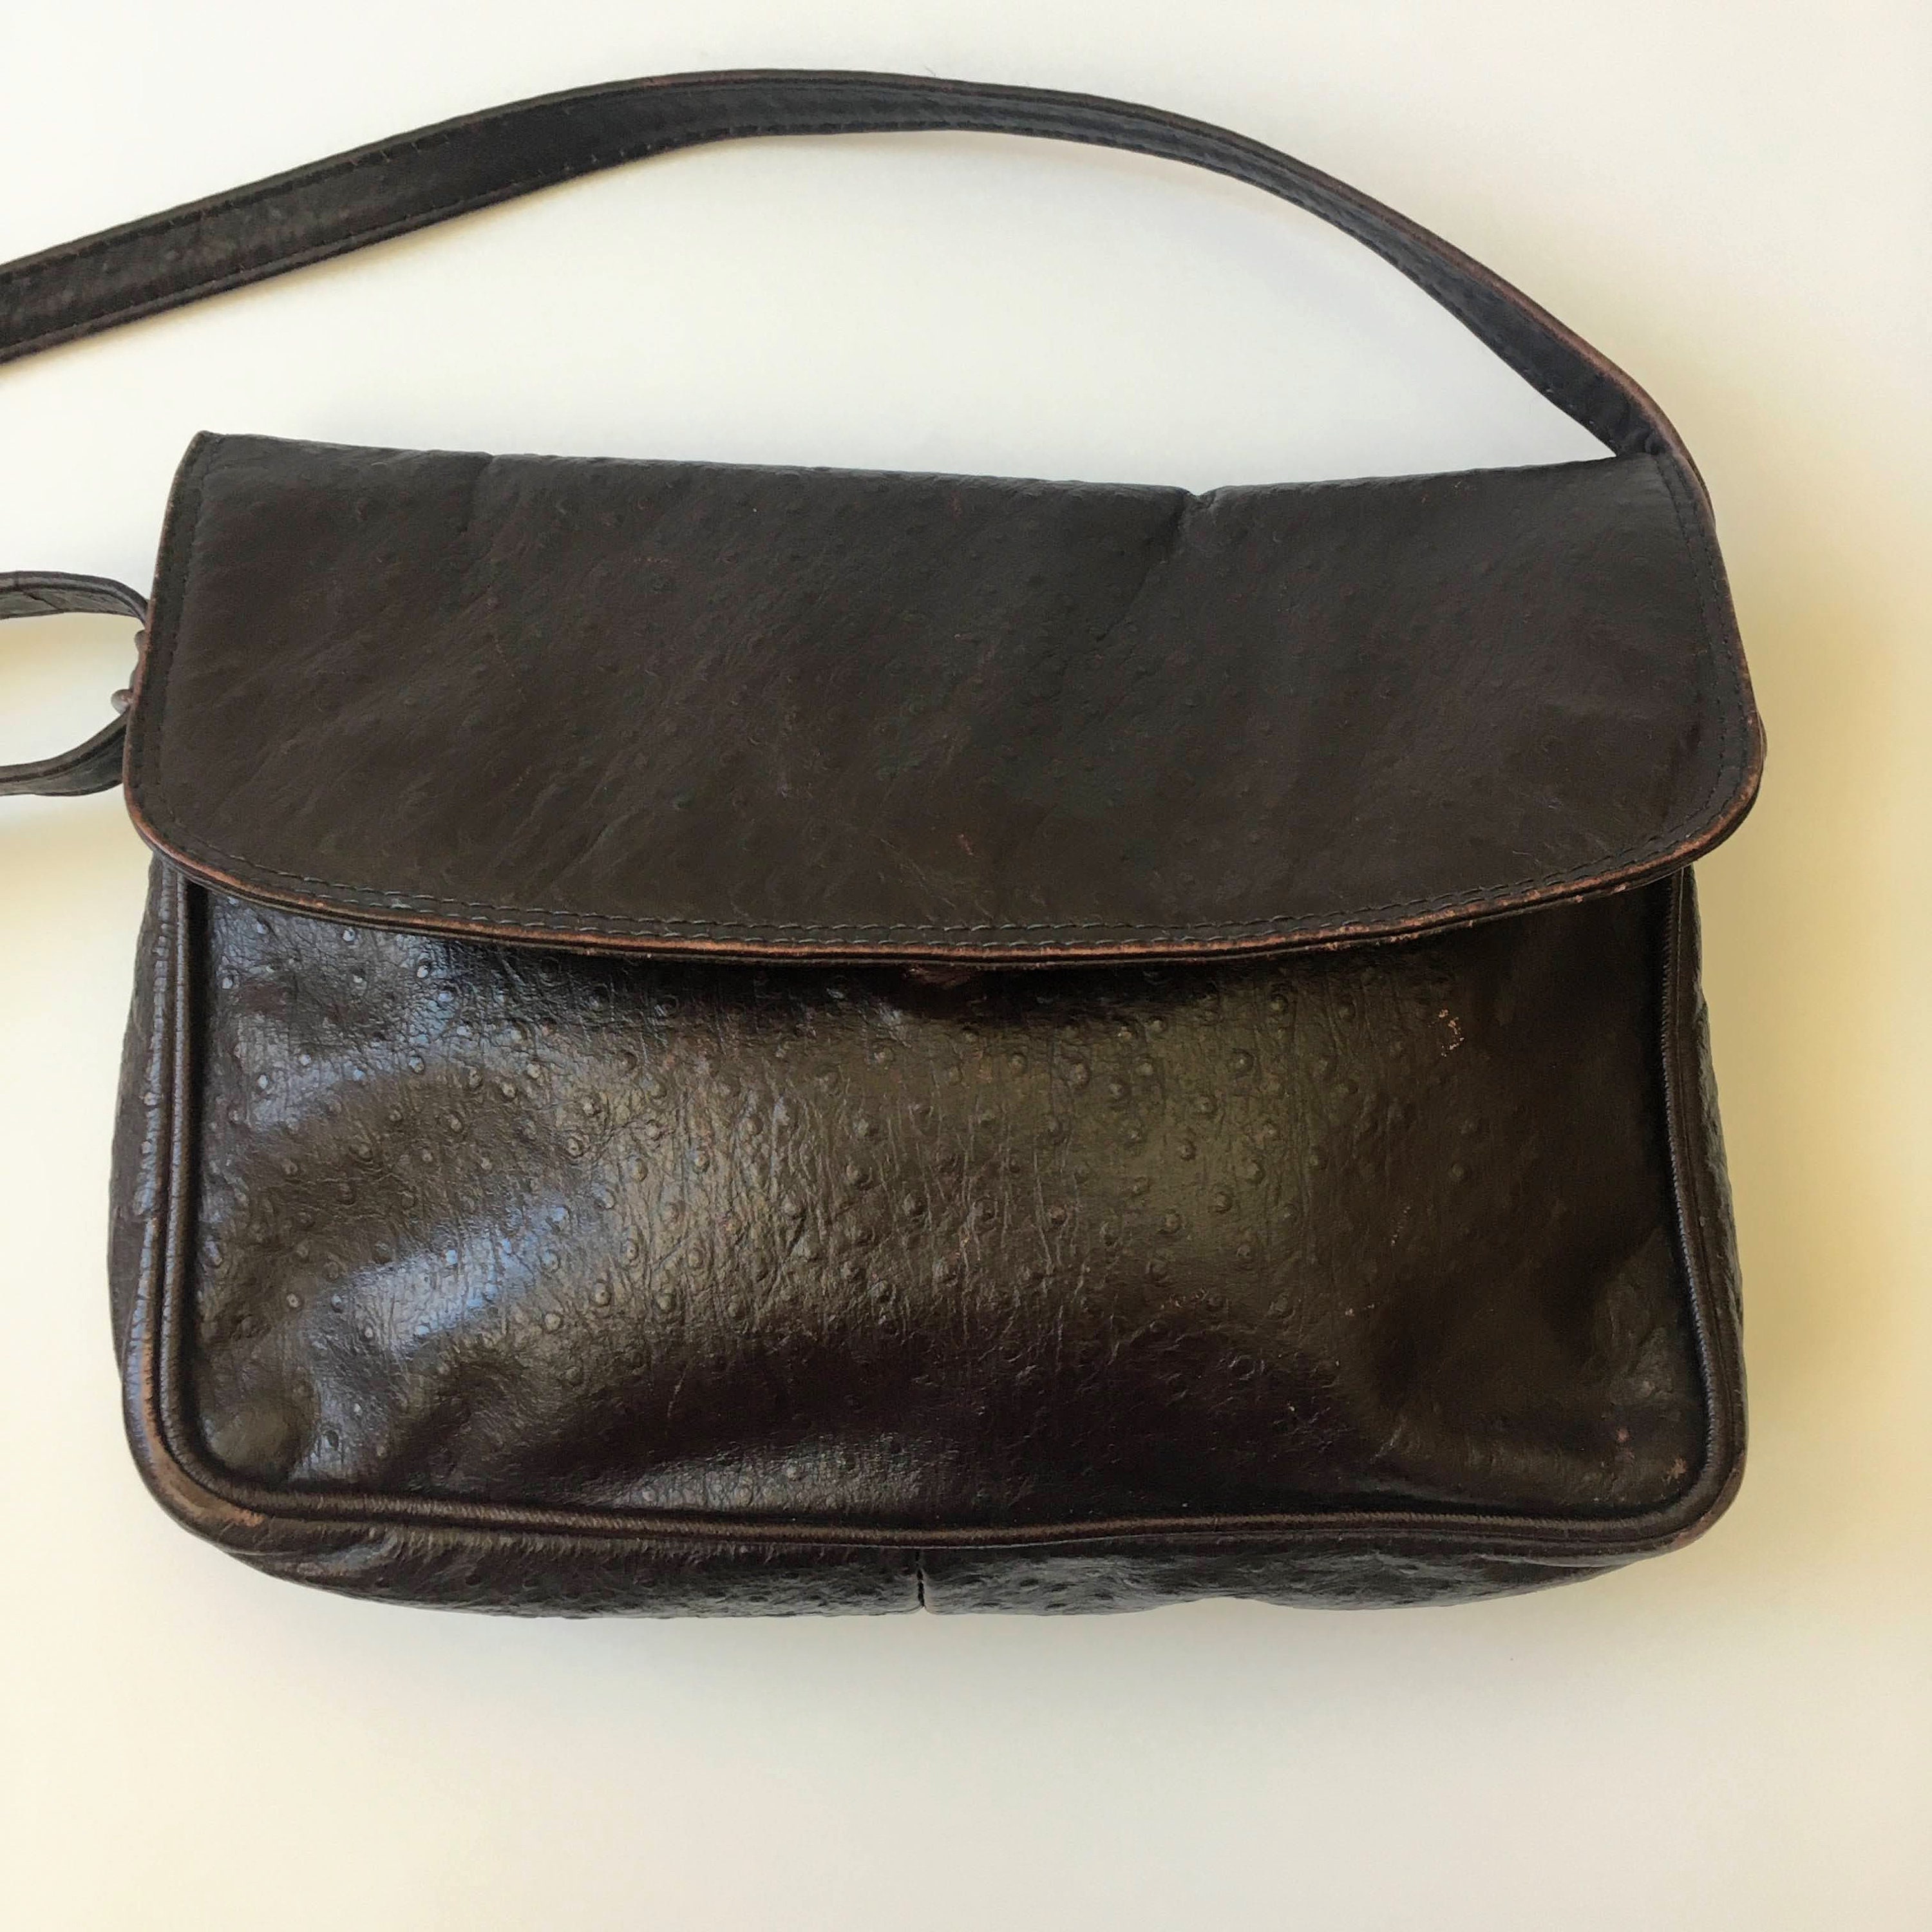 Ostrich Hermès Handbags for Women - Vestiaire Collective